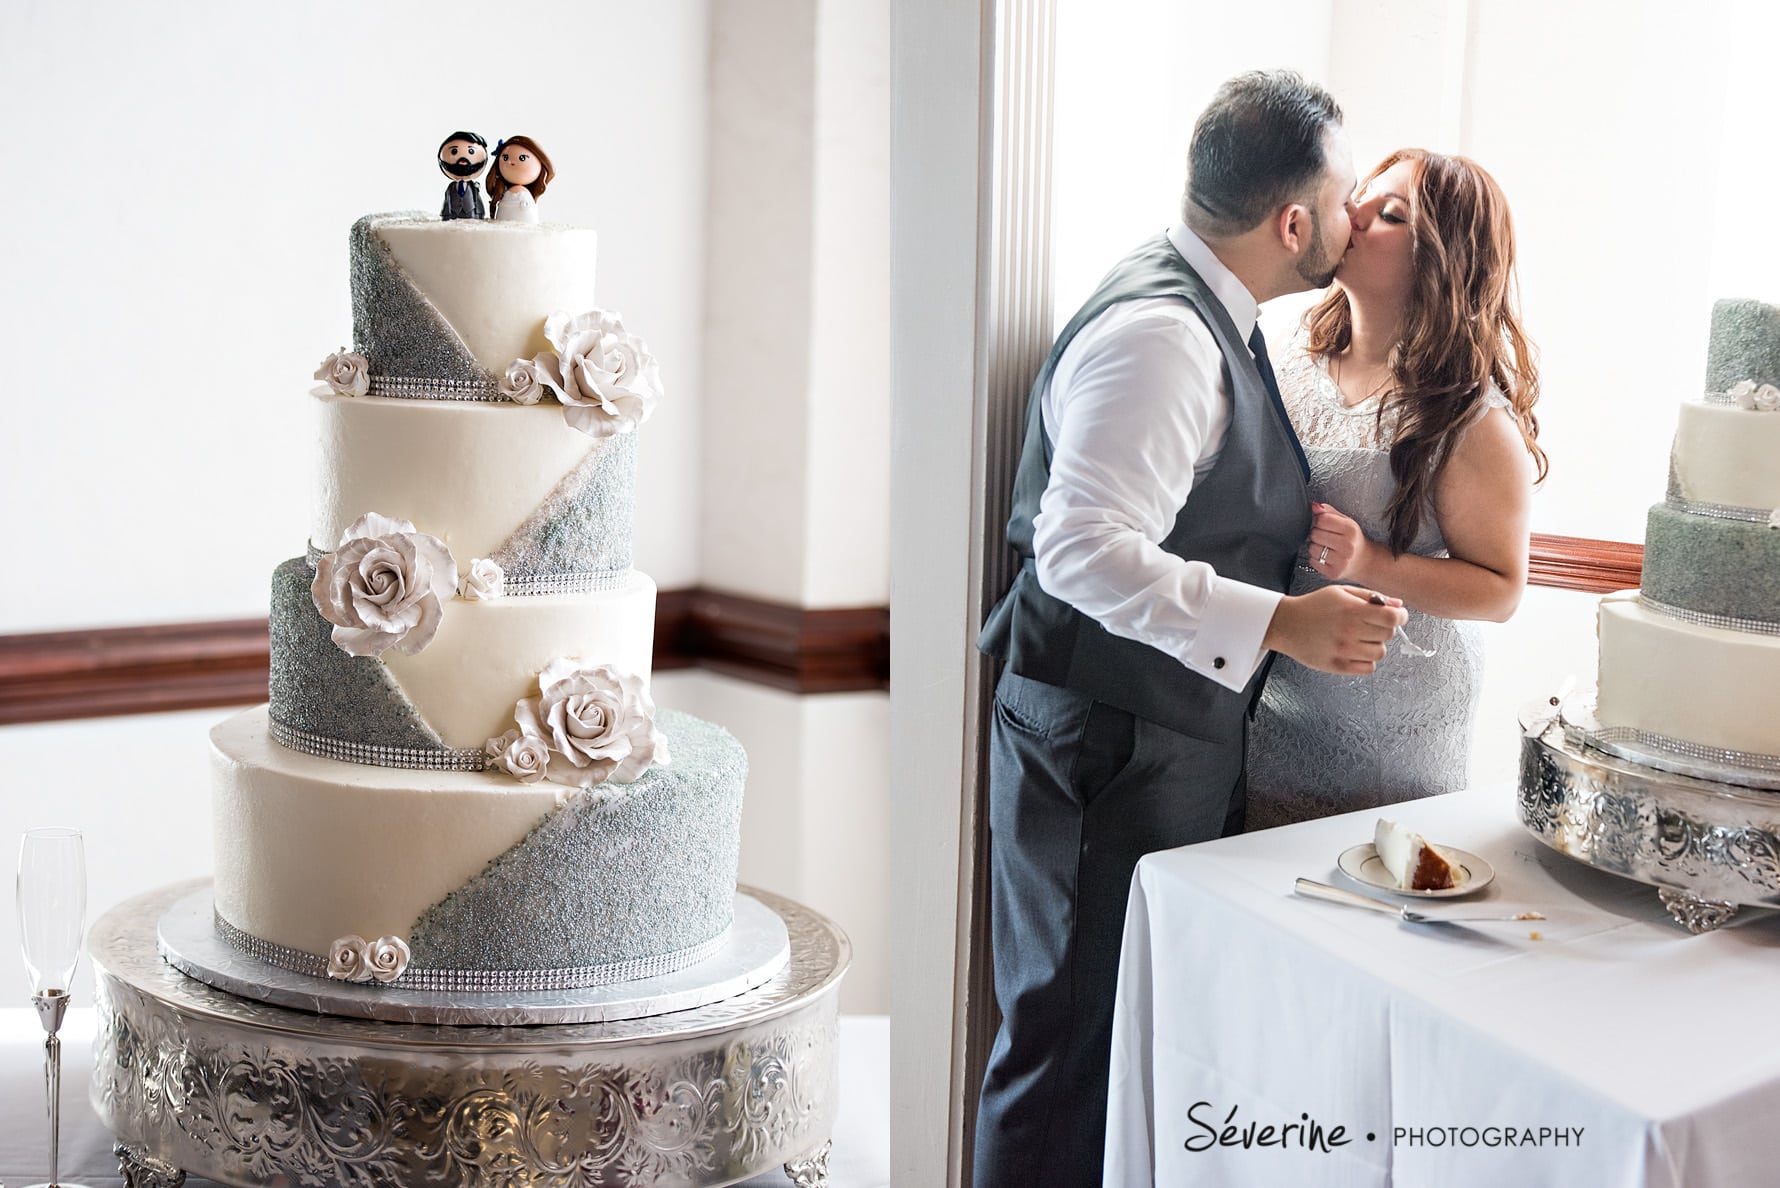 Grey and white elegant wedding cake